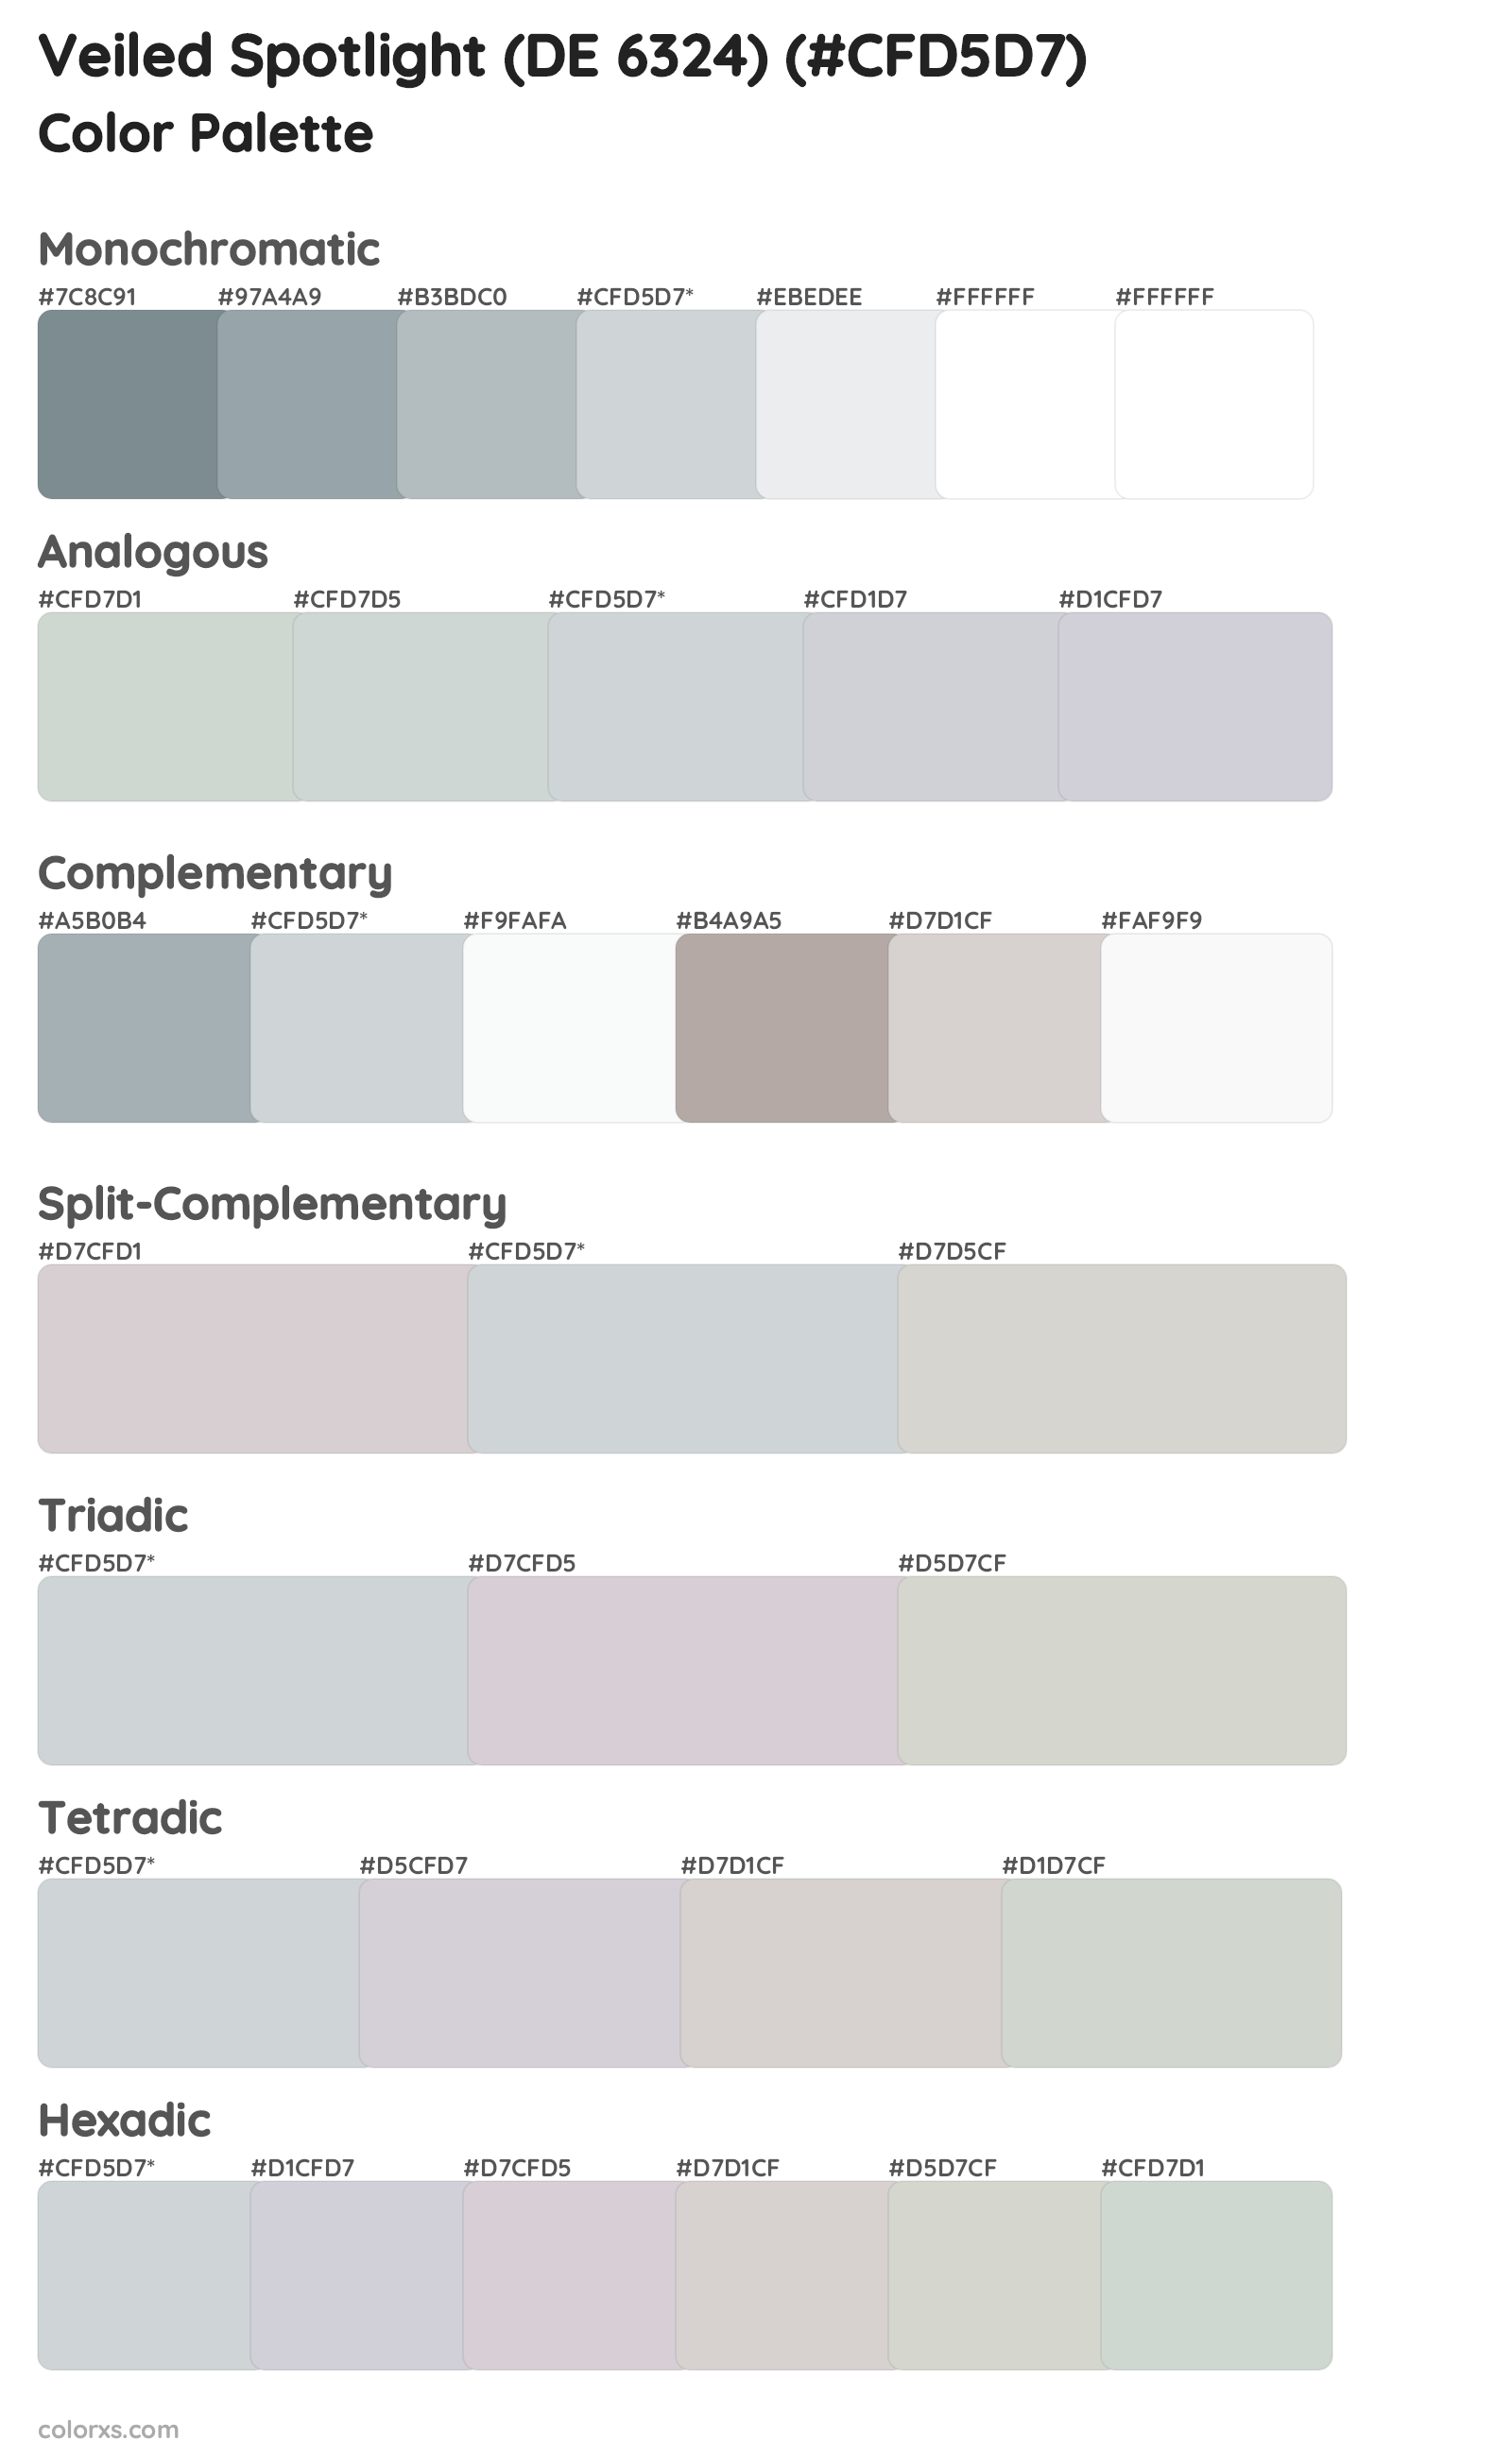 Veiled Spotlight (DE 6324) Color Scheme Palettes